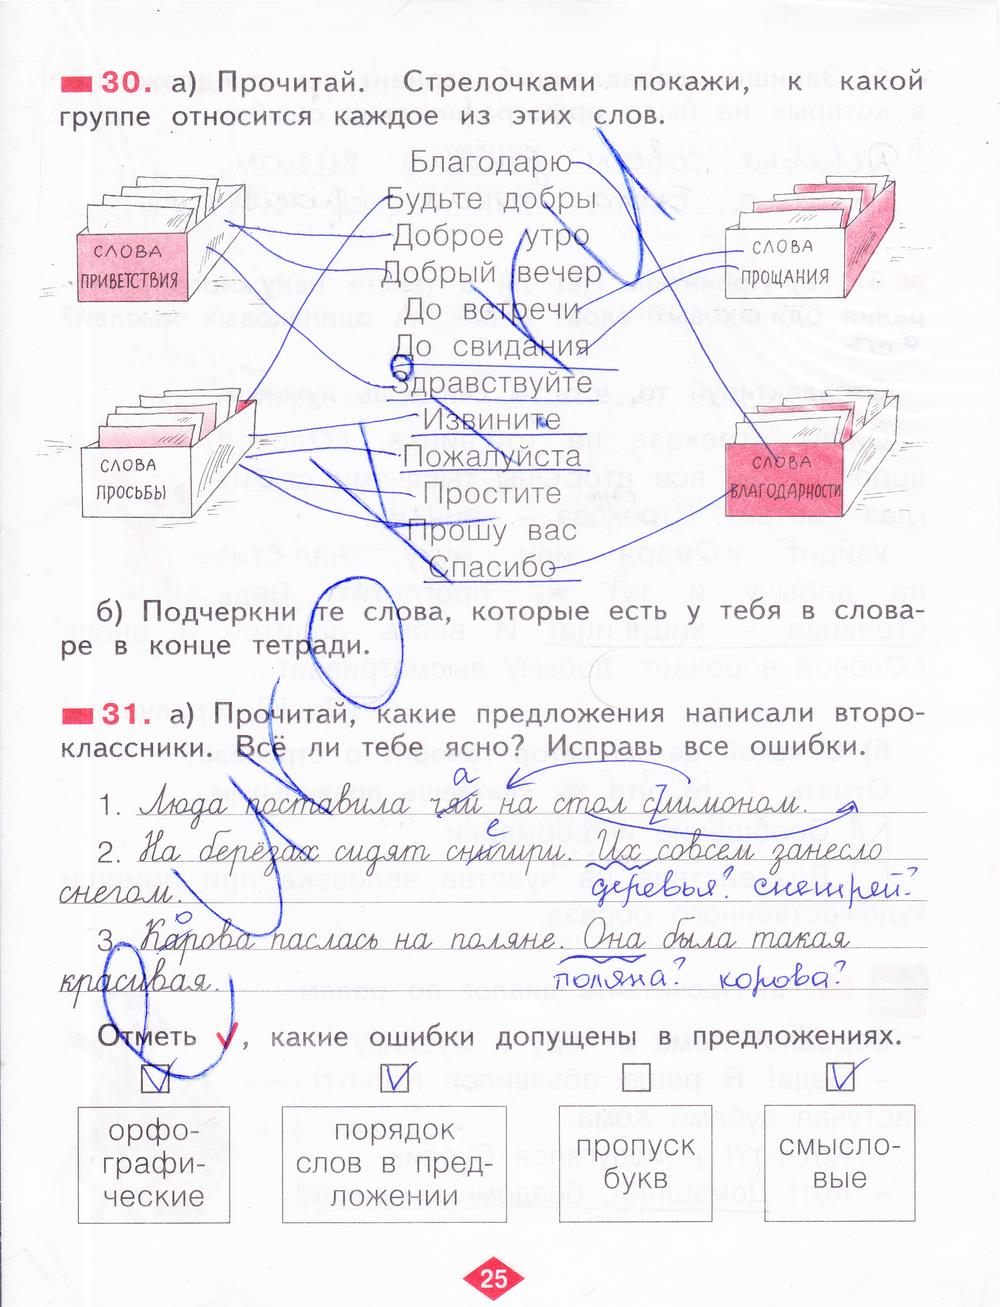 гдз 2 класс рабочая тетрадь часть 4 страница 25 русский язык Яковлева